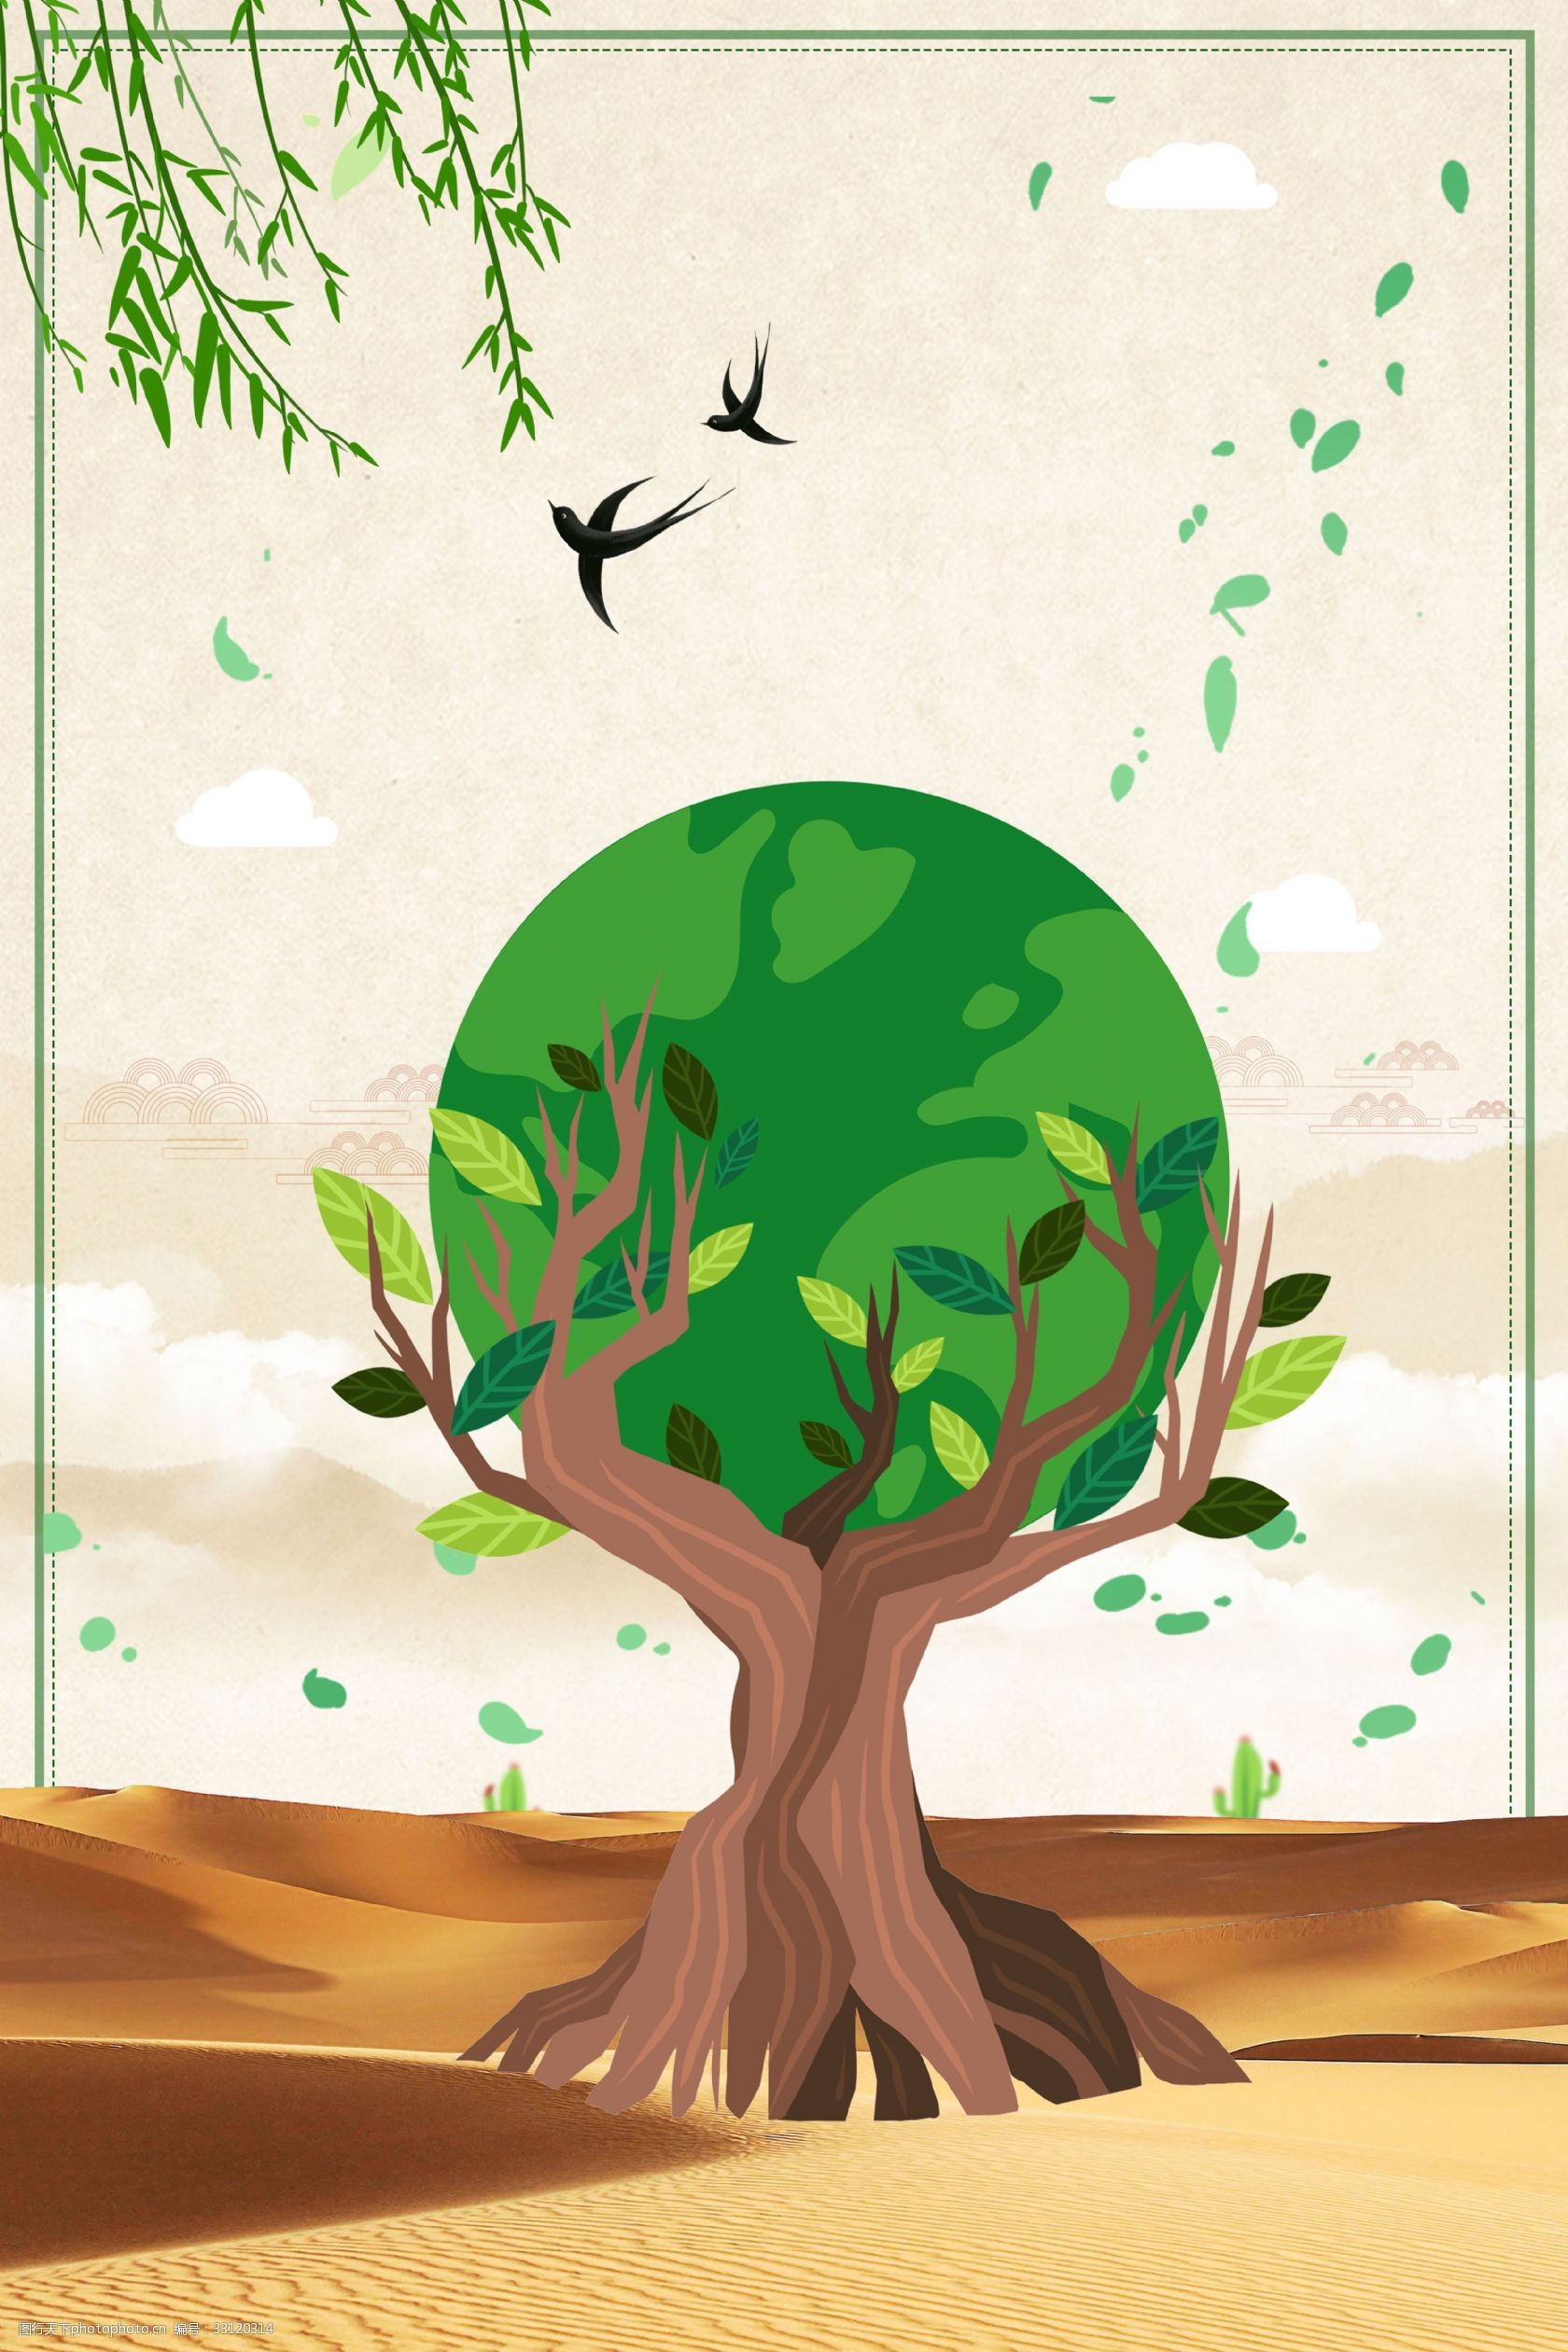 关键词:简洁世界环境日海报 世界环境日 环境日 保护环境 公益 环保